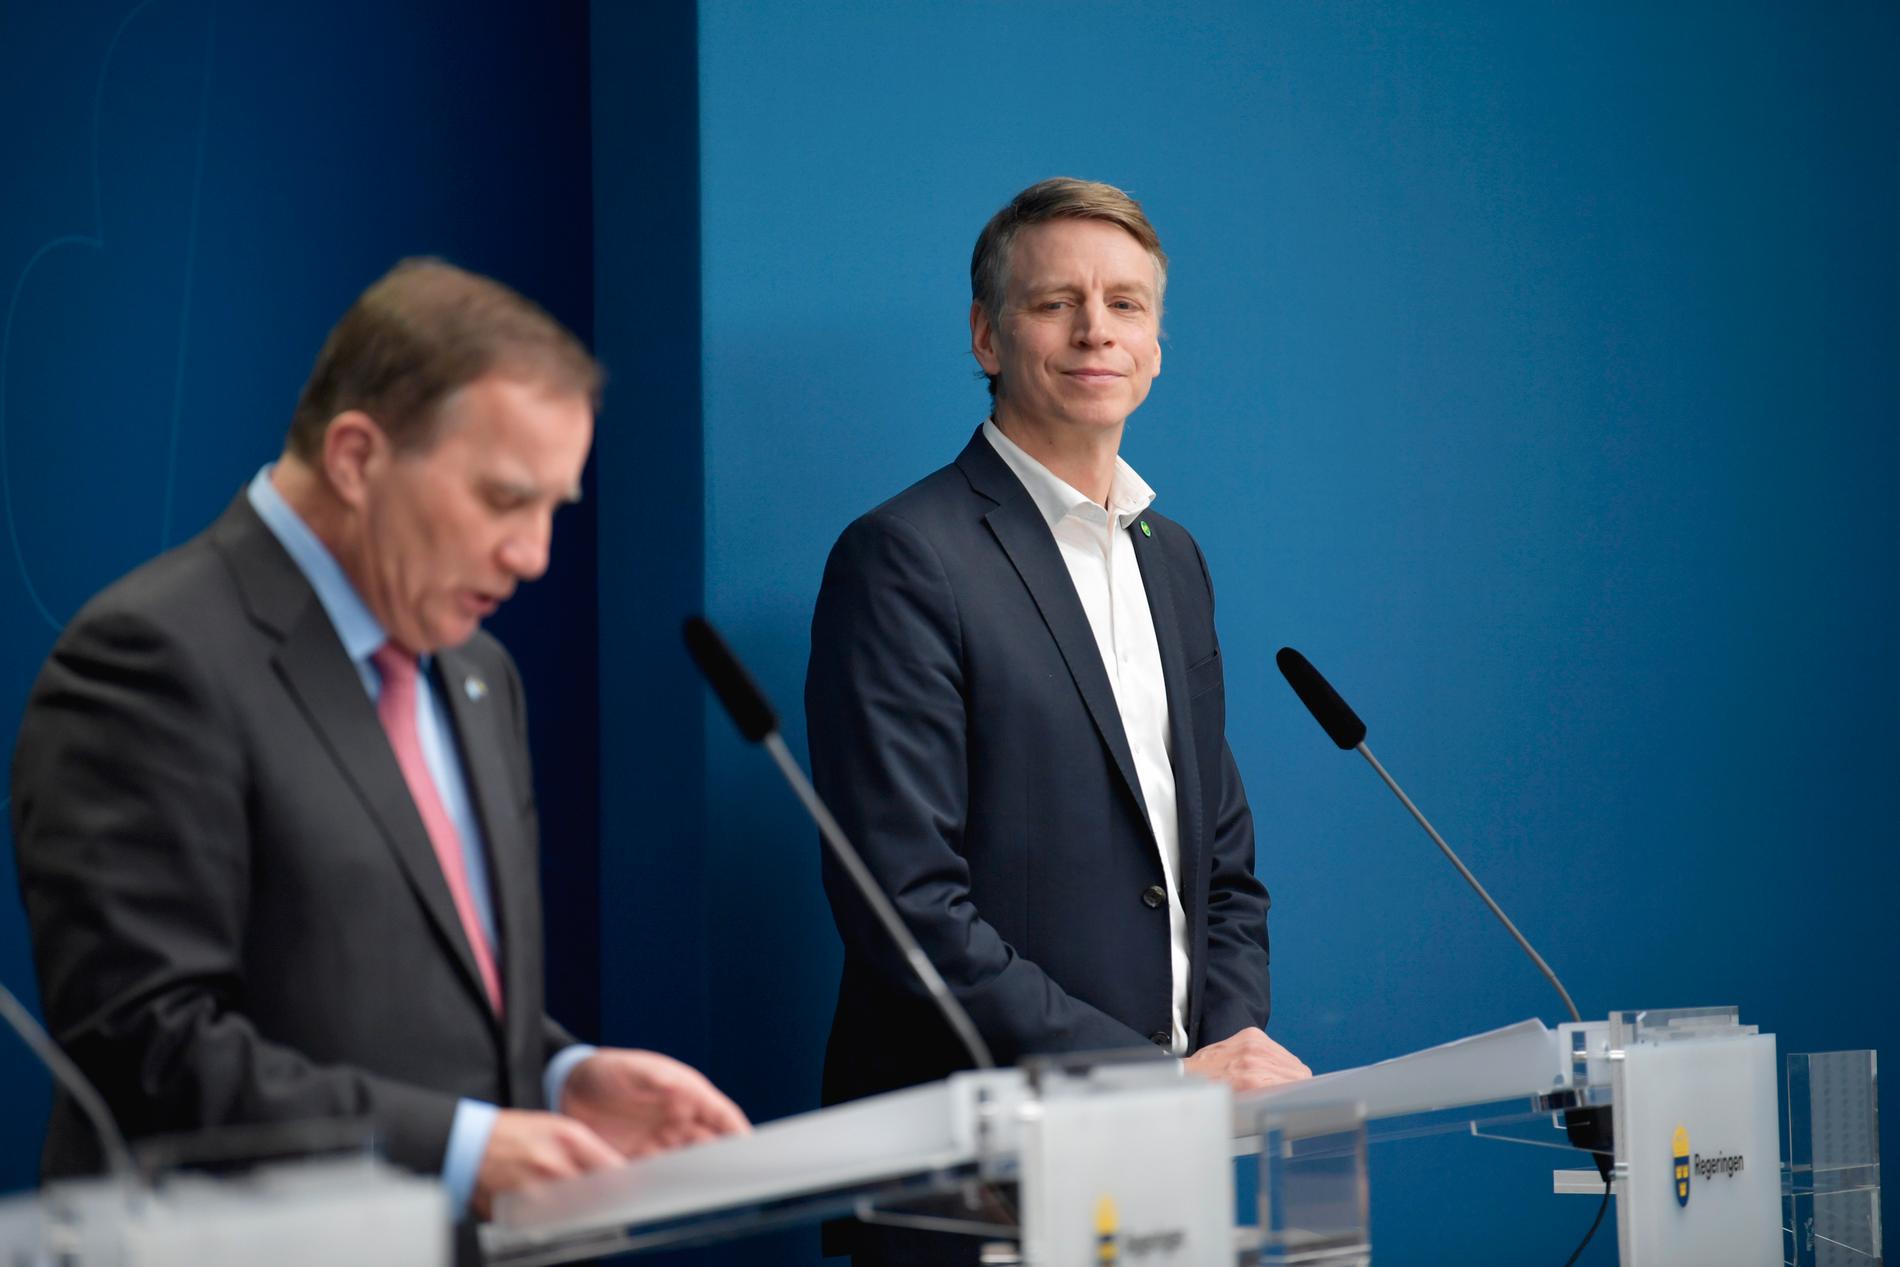 Statsminister Stefan Löfven (S) presenterar Per Bolund som miljöminister och vice statsminister en regeringsombildning under en pressträff i Rosenbad.